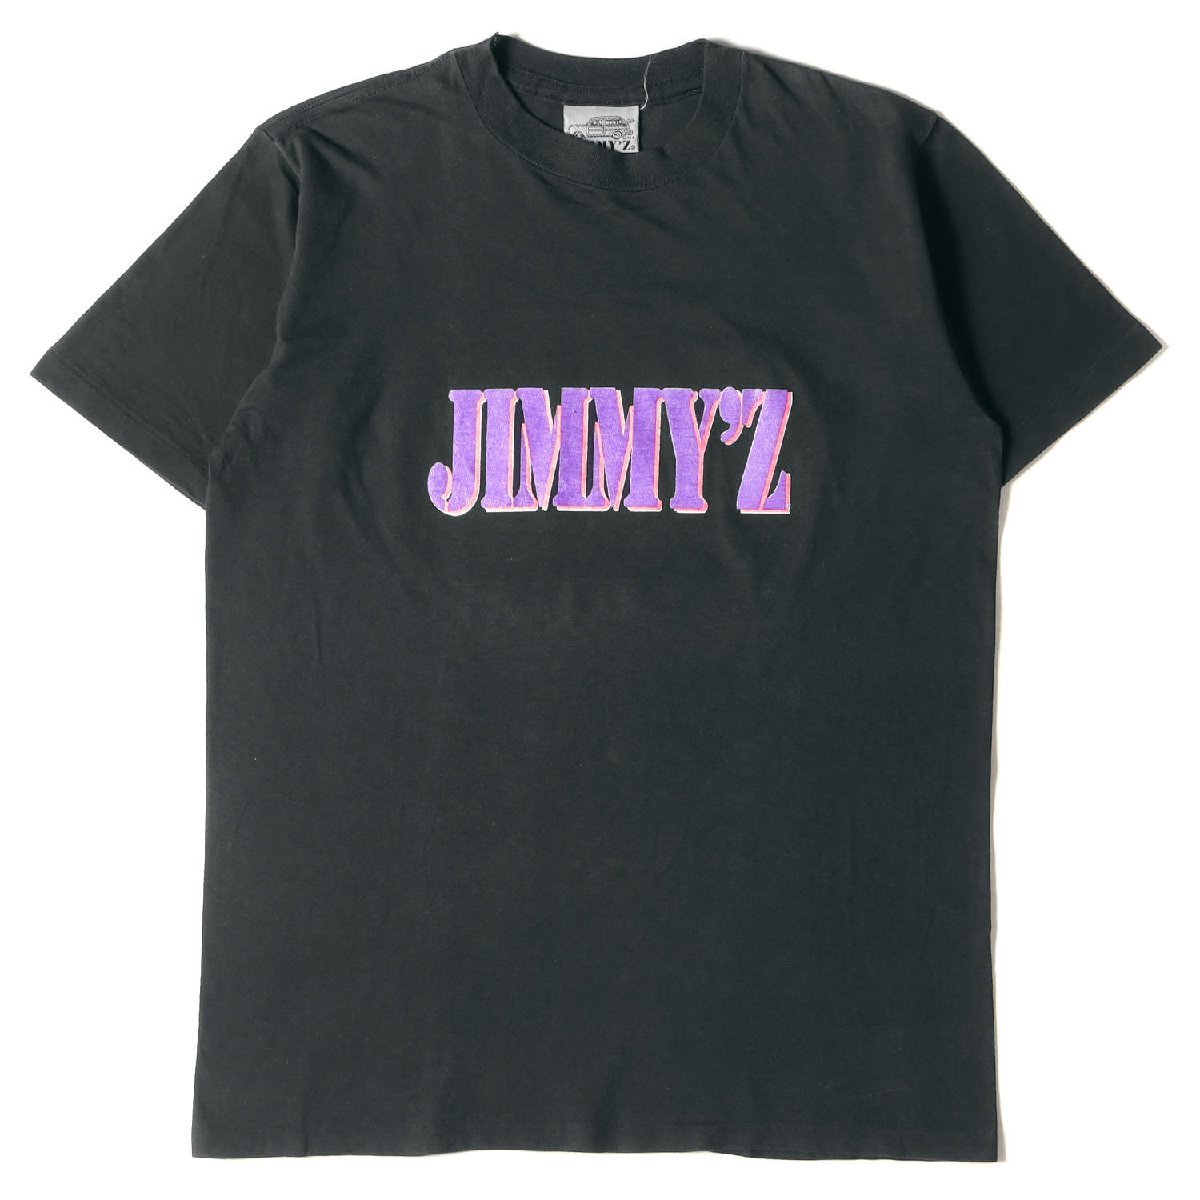 JIMMYZ ジミーズ Tシャツ サイズ:m 90s ブランドロゴ クルーネック Tシャツ カナダ製 ブラック 黒 トップス カットソー 半袖